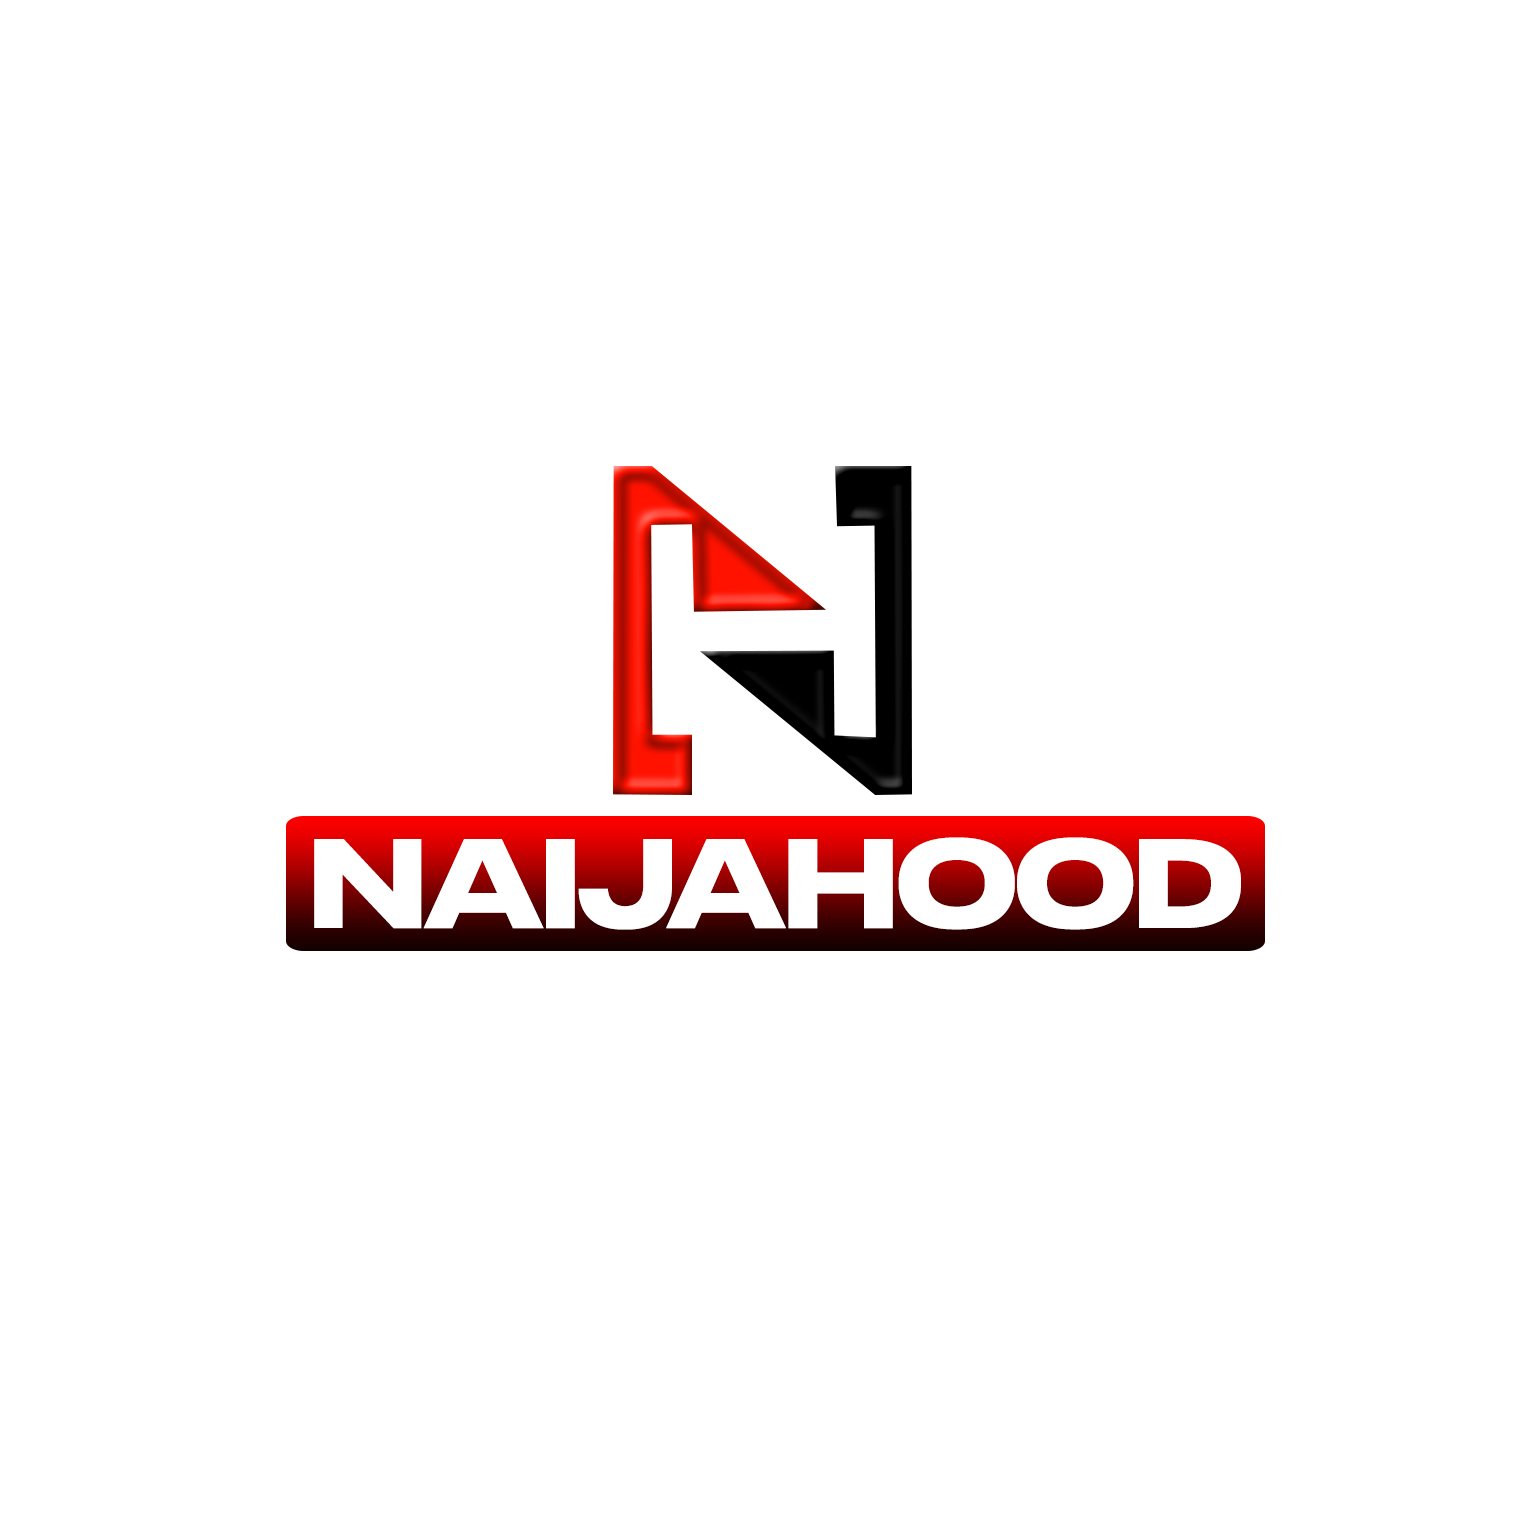 naijahood Footer Logo